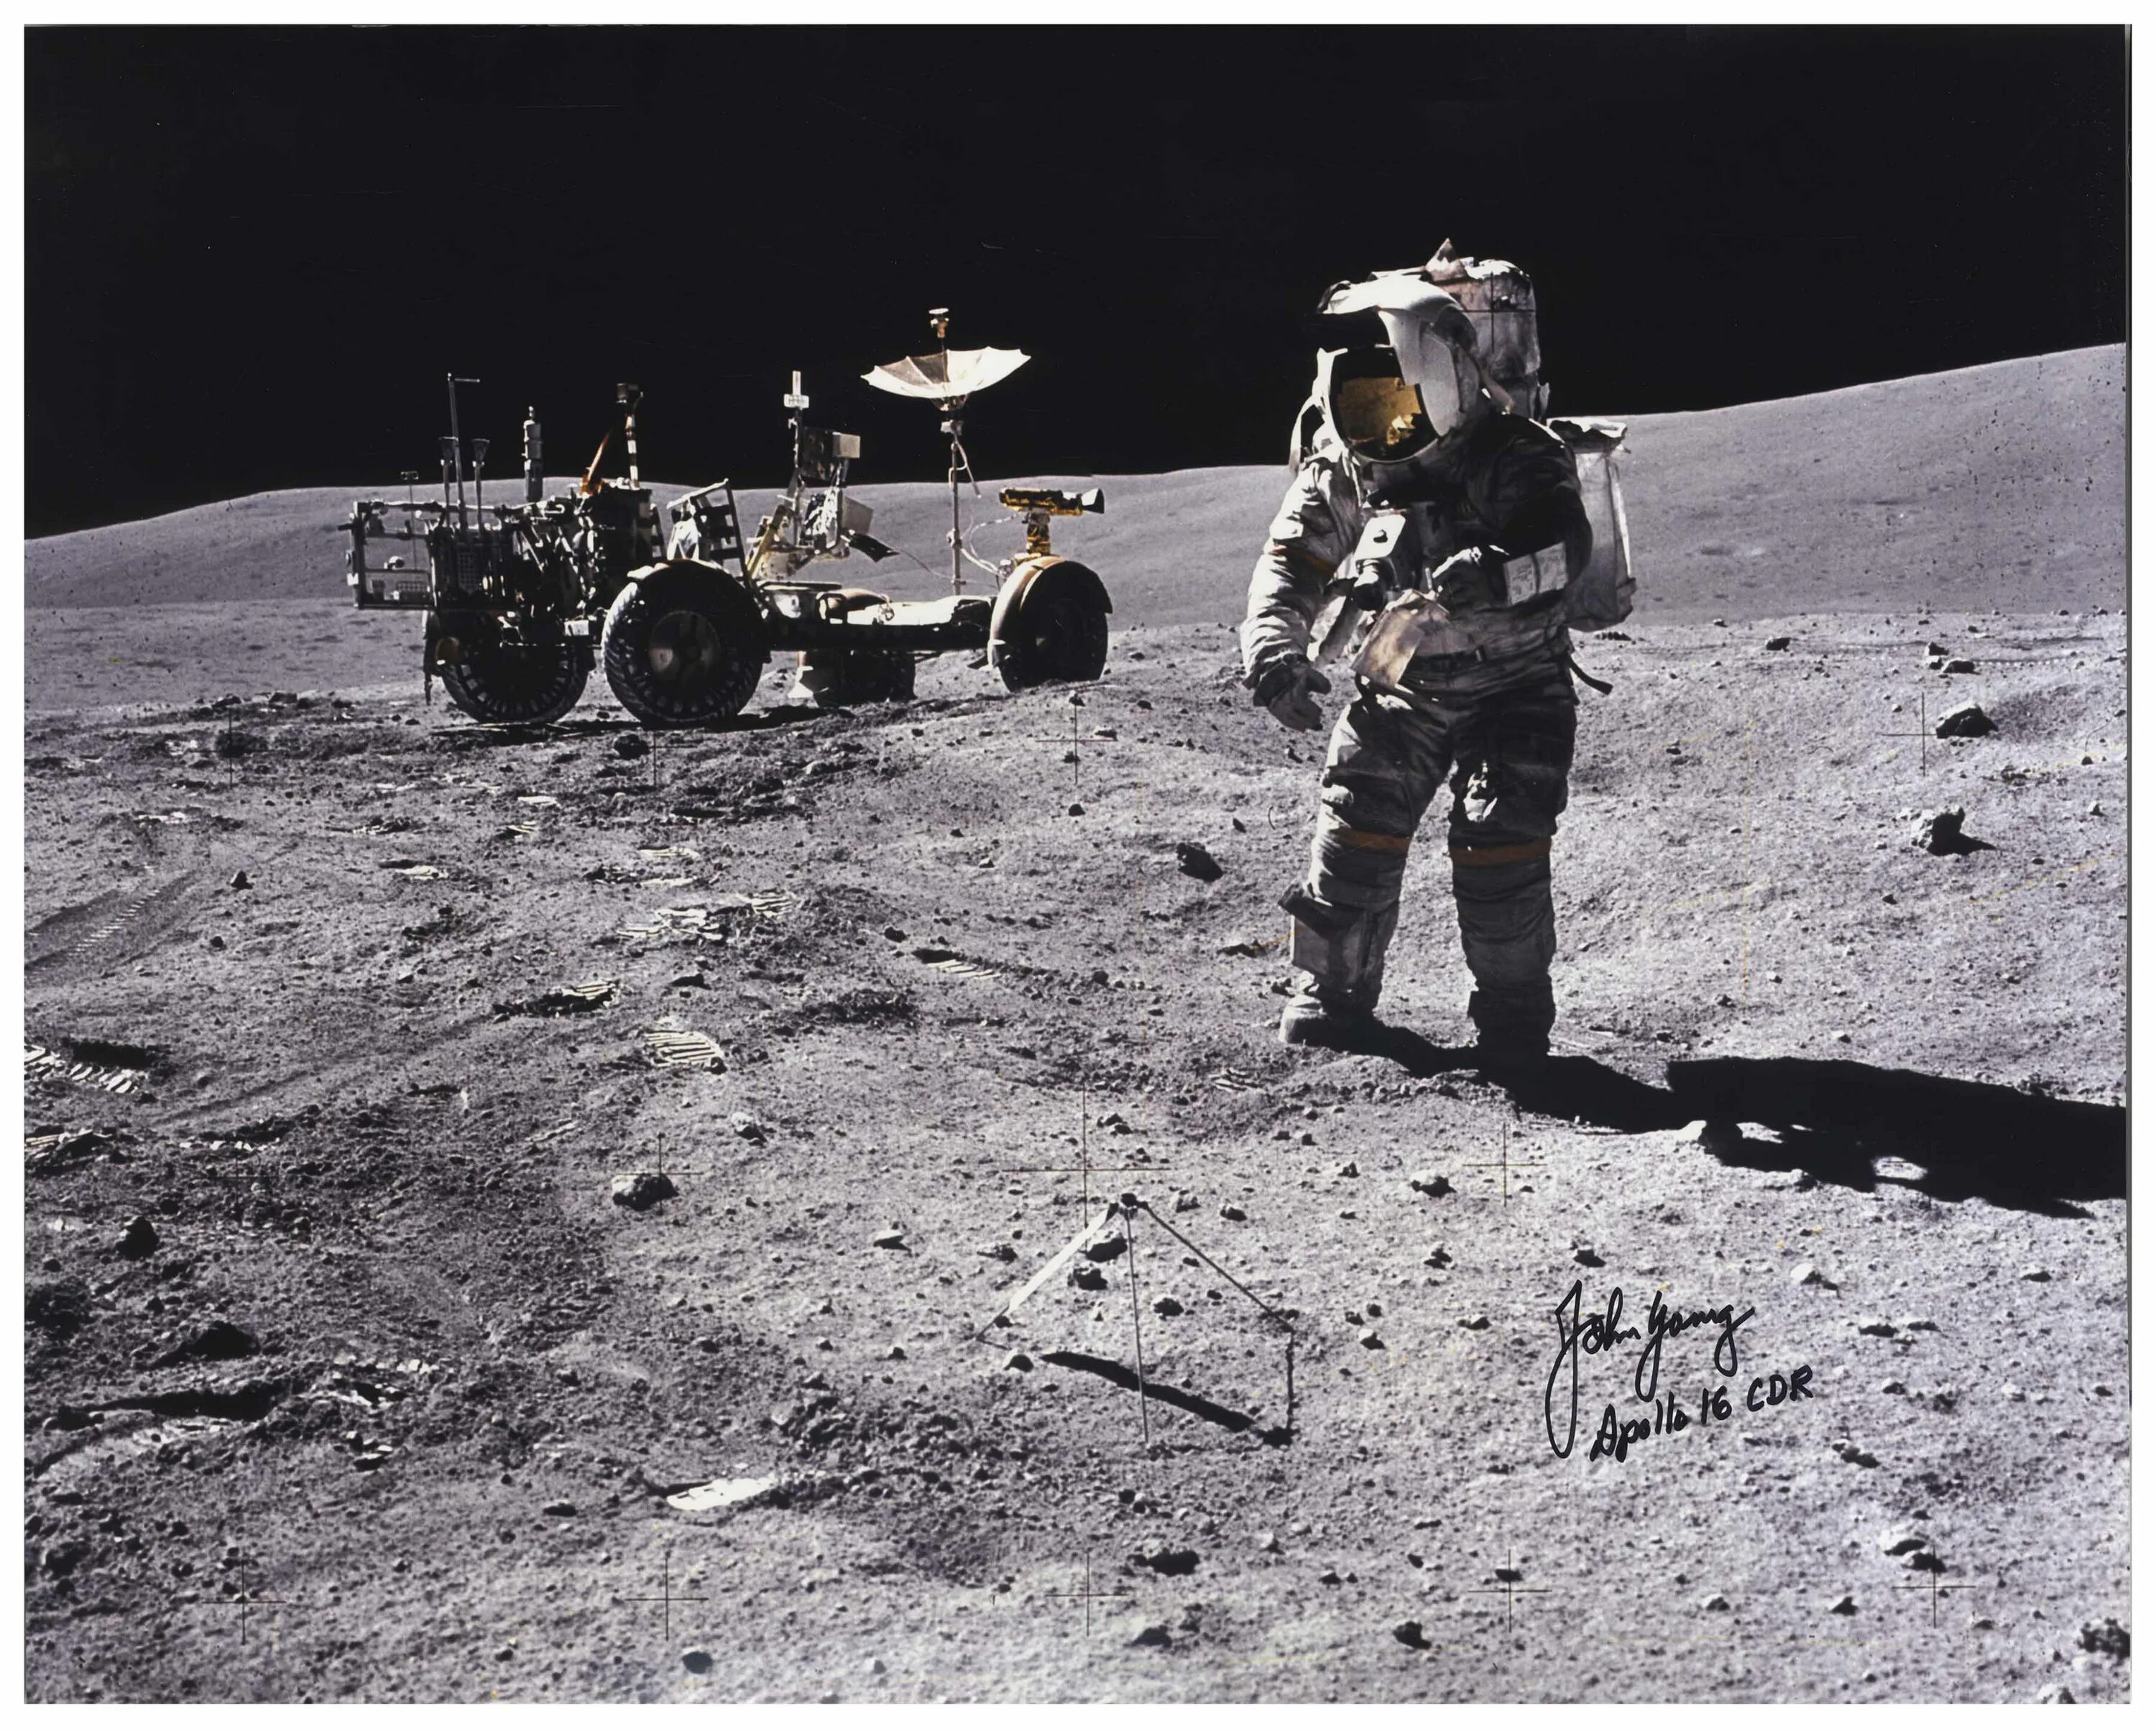 Первый человек высадился на луну. Аполлон 11 высадка. Аполло-14 астронавты на Луне. Миссия Аполлон 11. Американцы на Луне 1969.